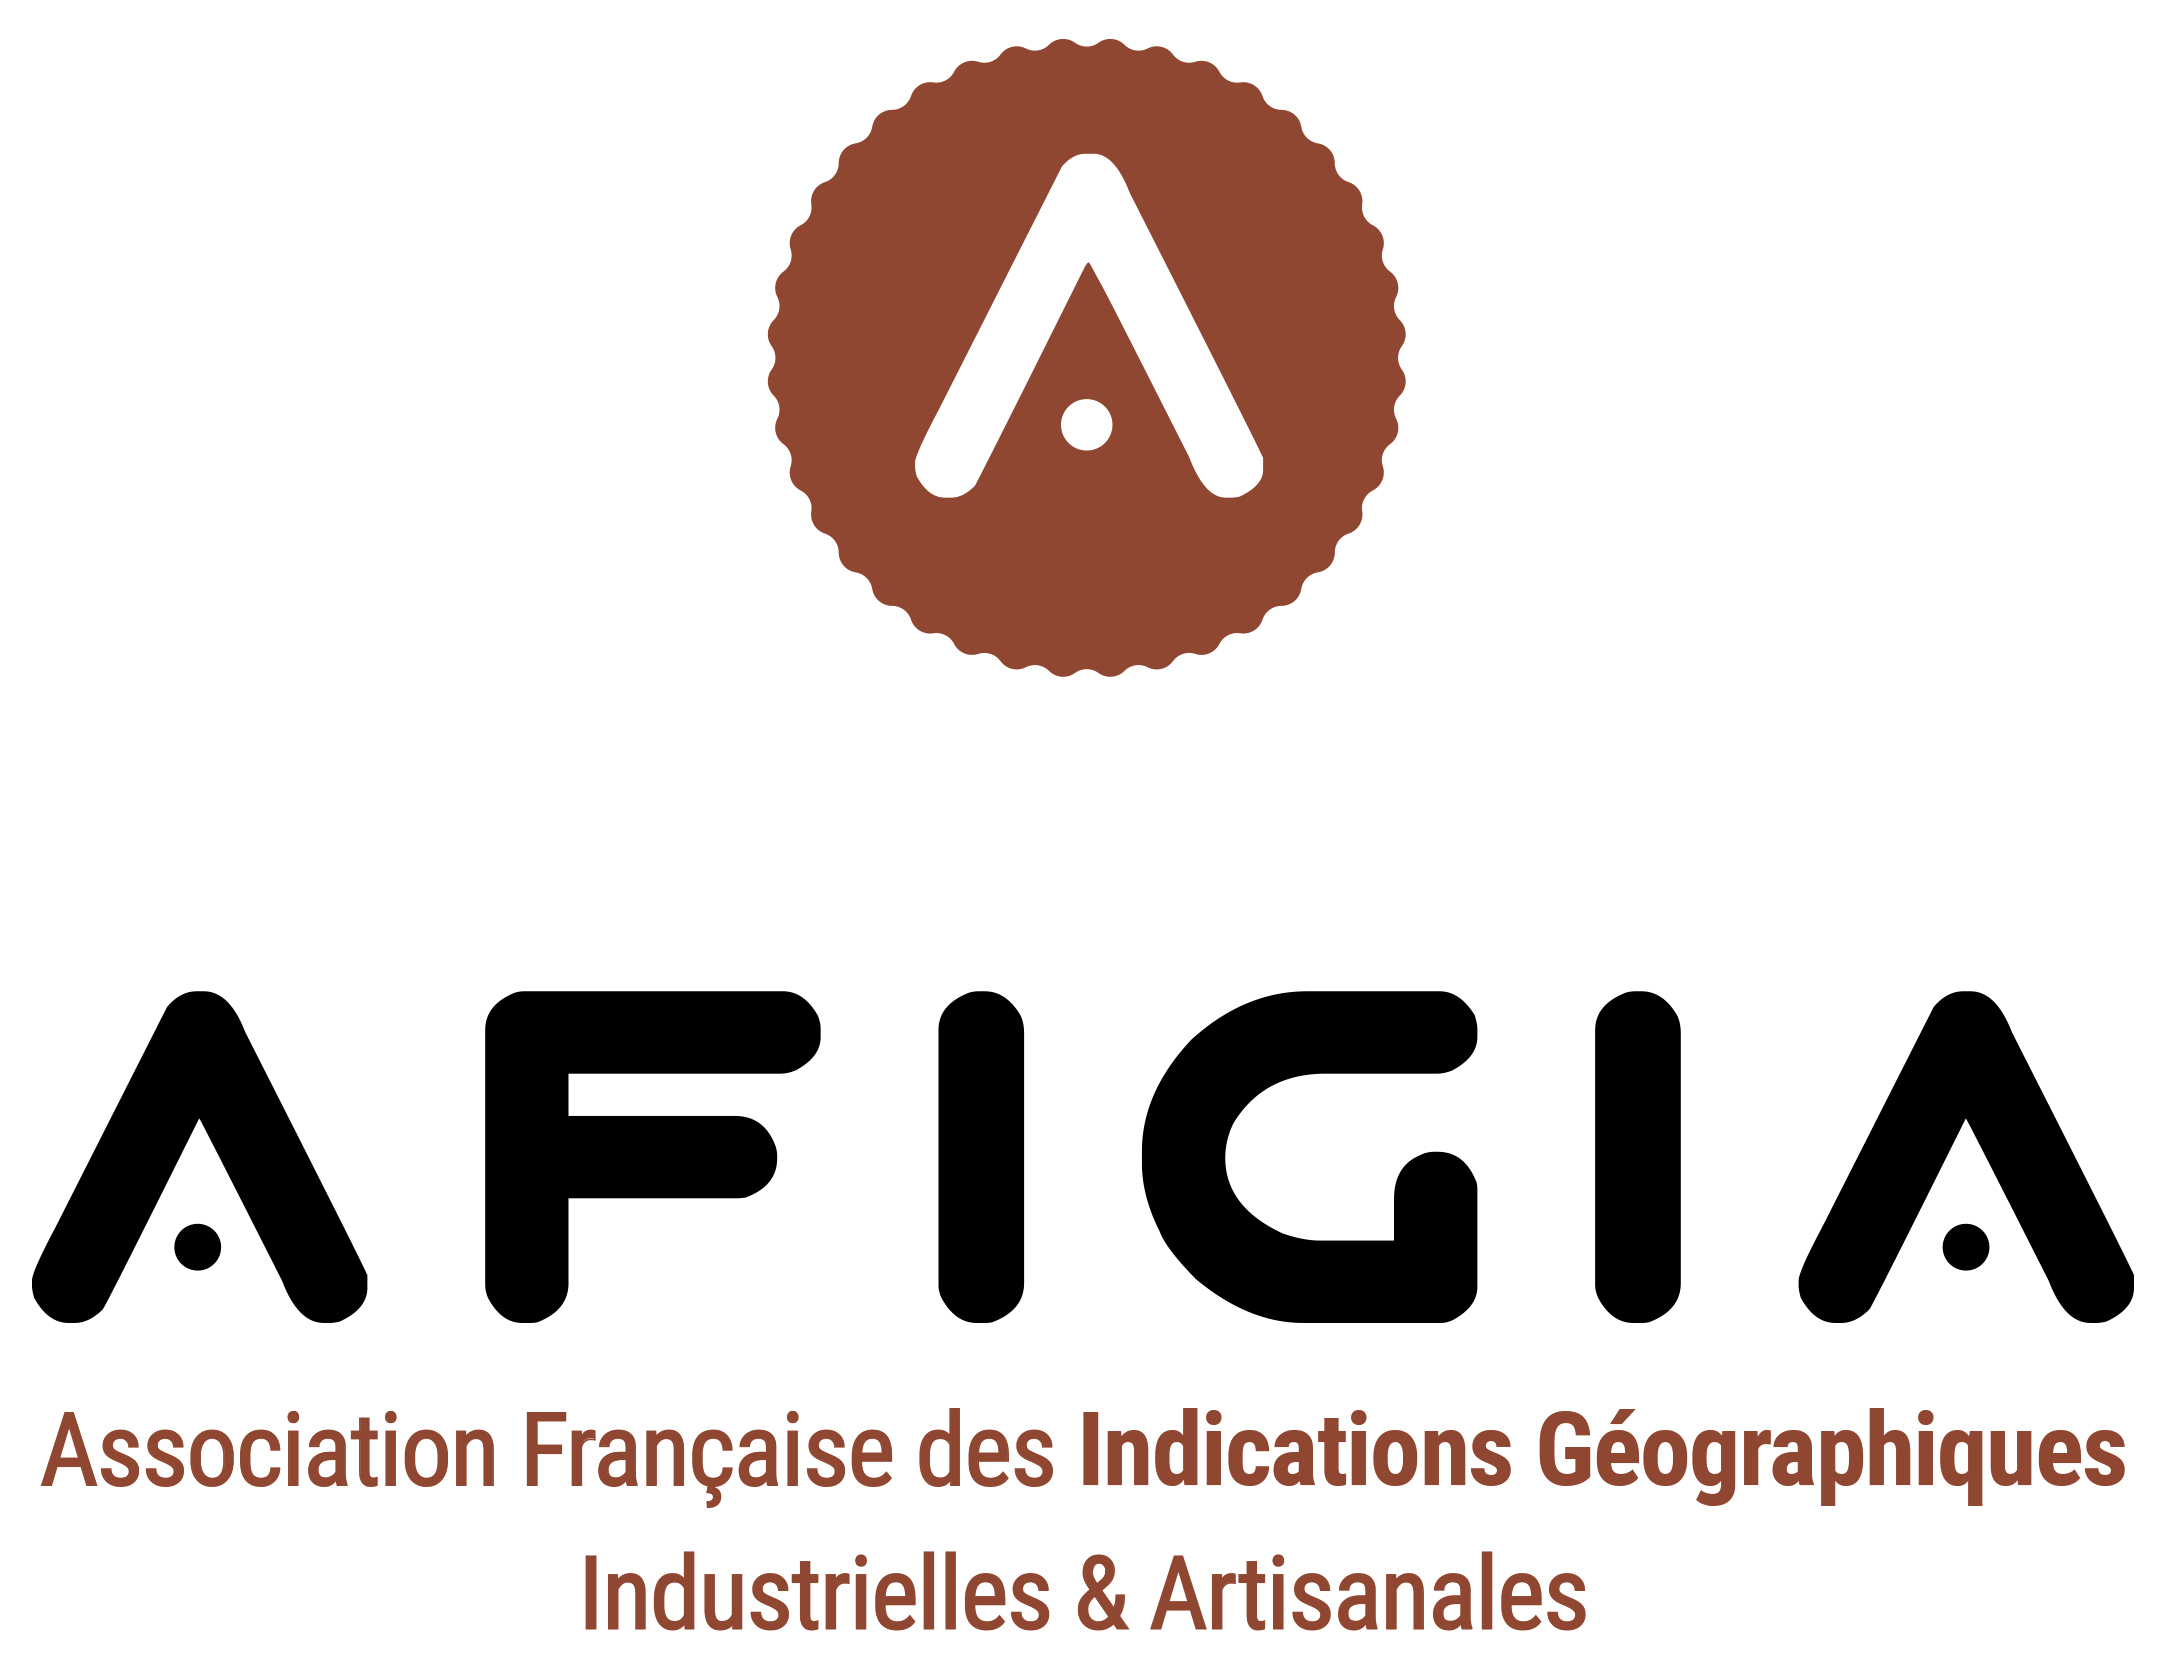 Association Française des Indications Géographiques Industrielles & Artisanales